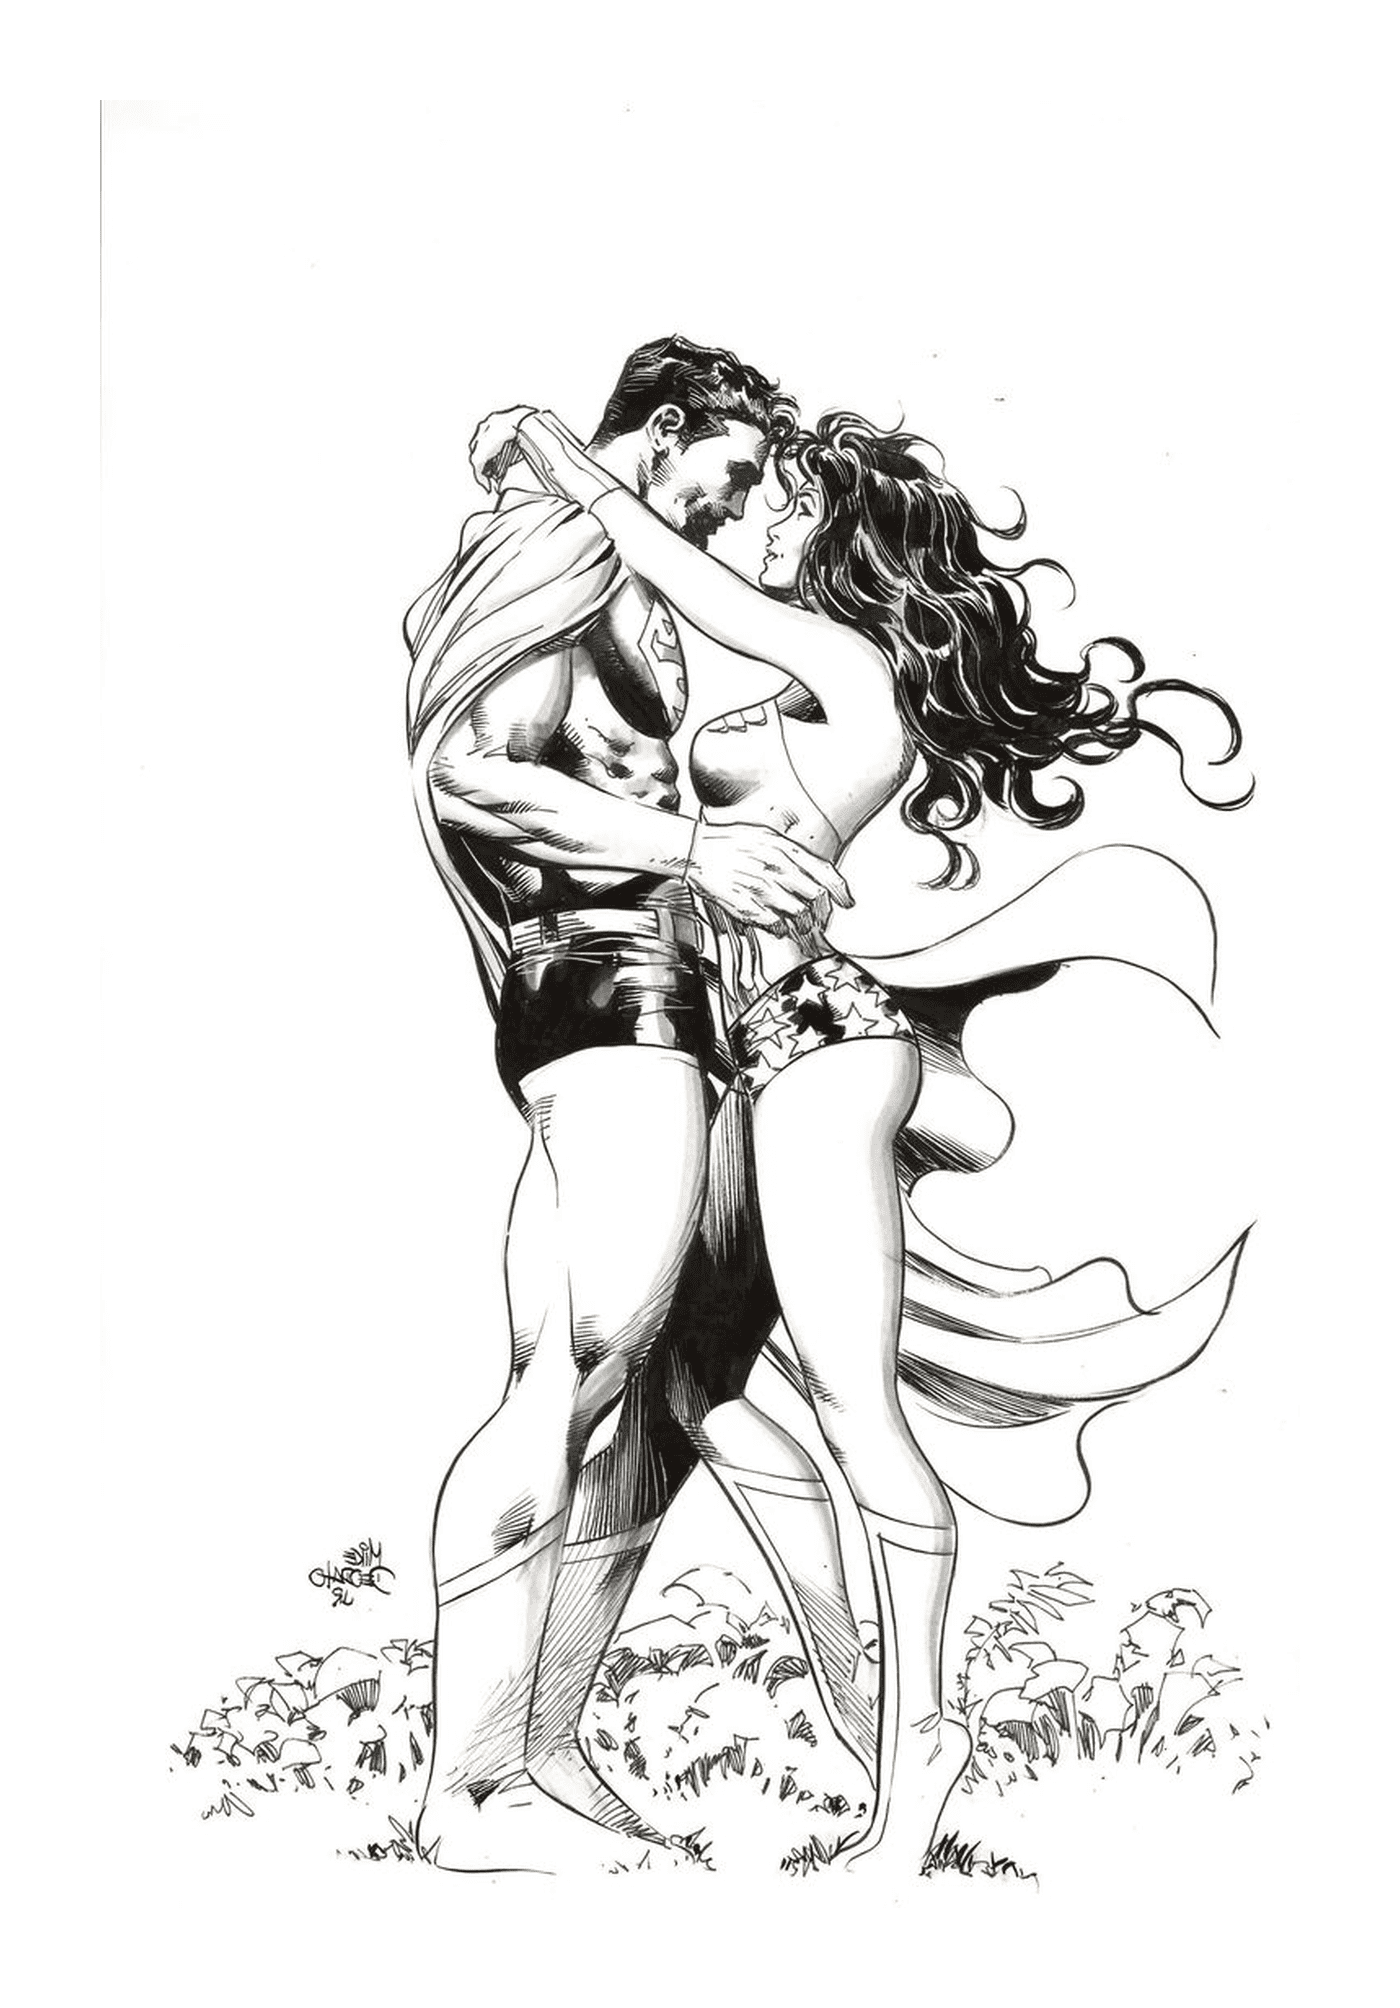   Homme et femme, Wonder Woman amoureuse de Superman 